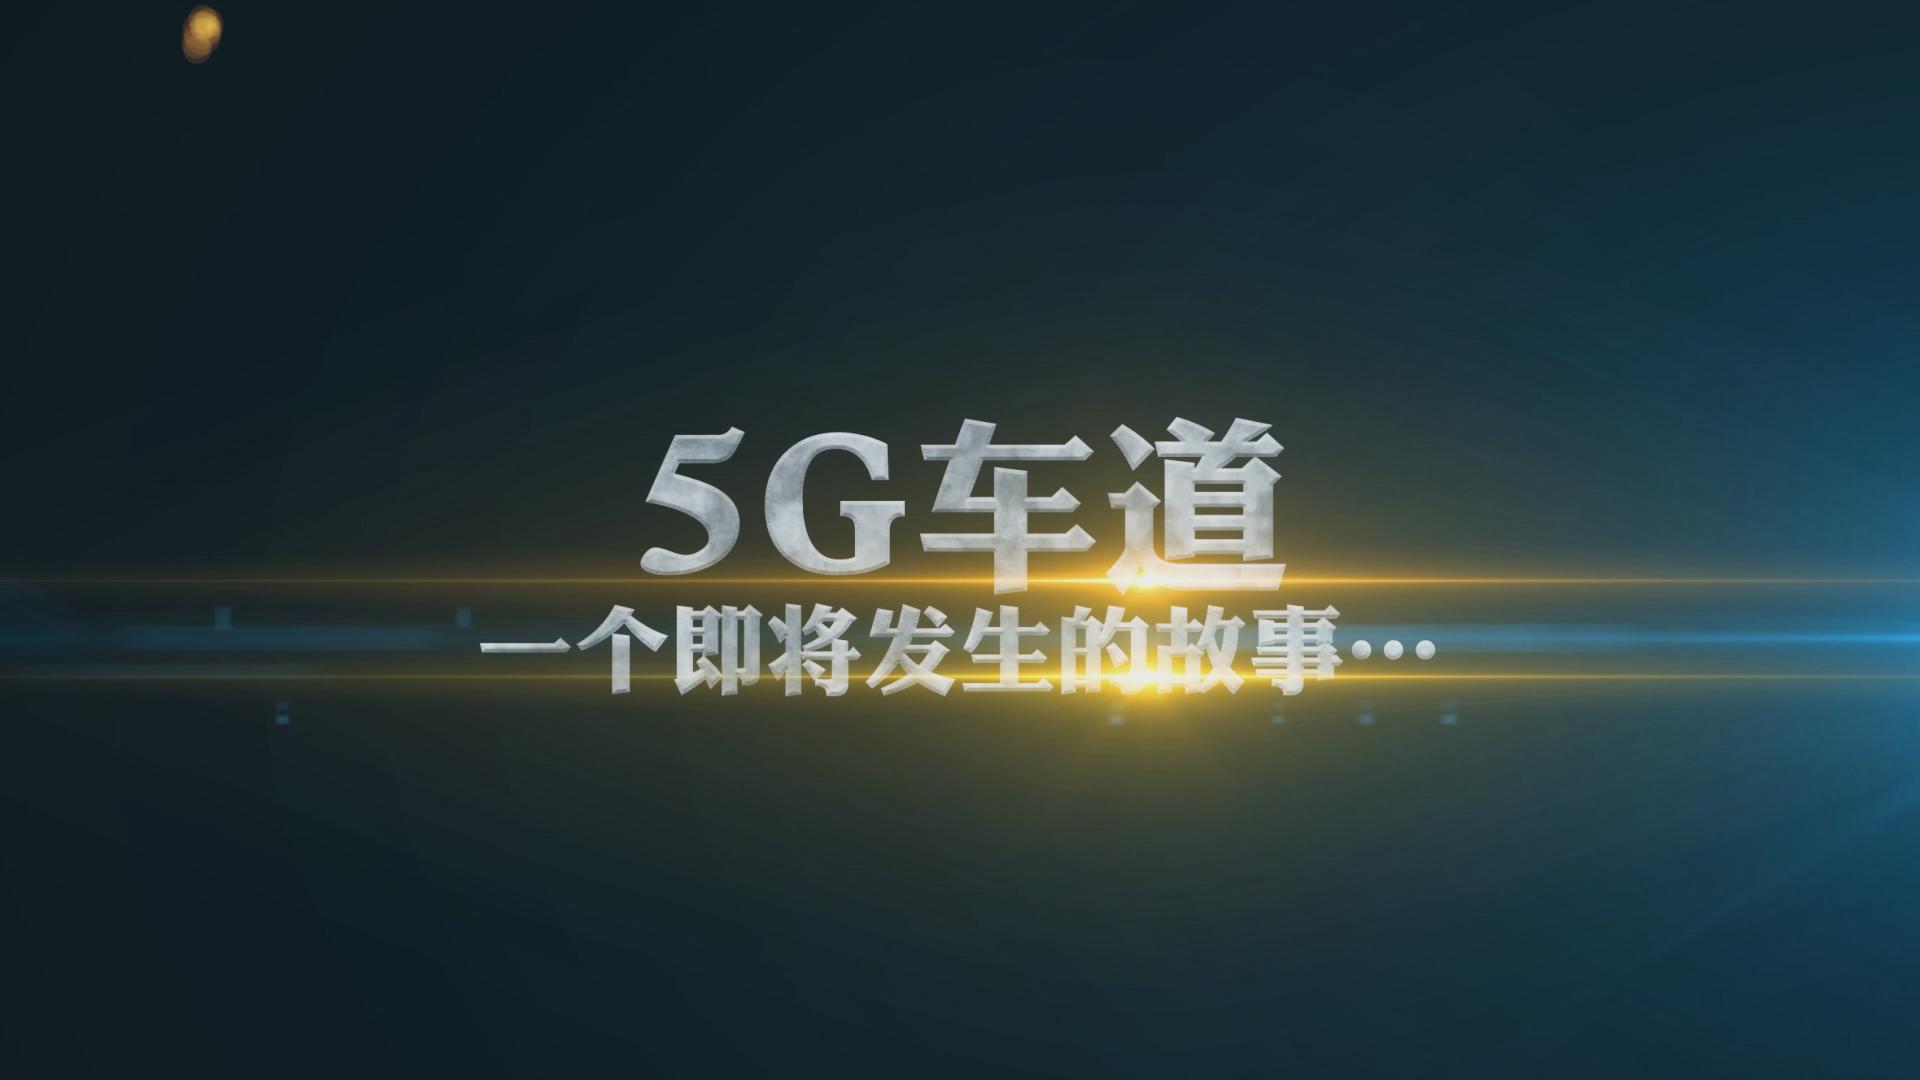 中国5G有多恐怖？5G到底是什么？看完就明白了